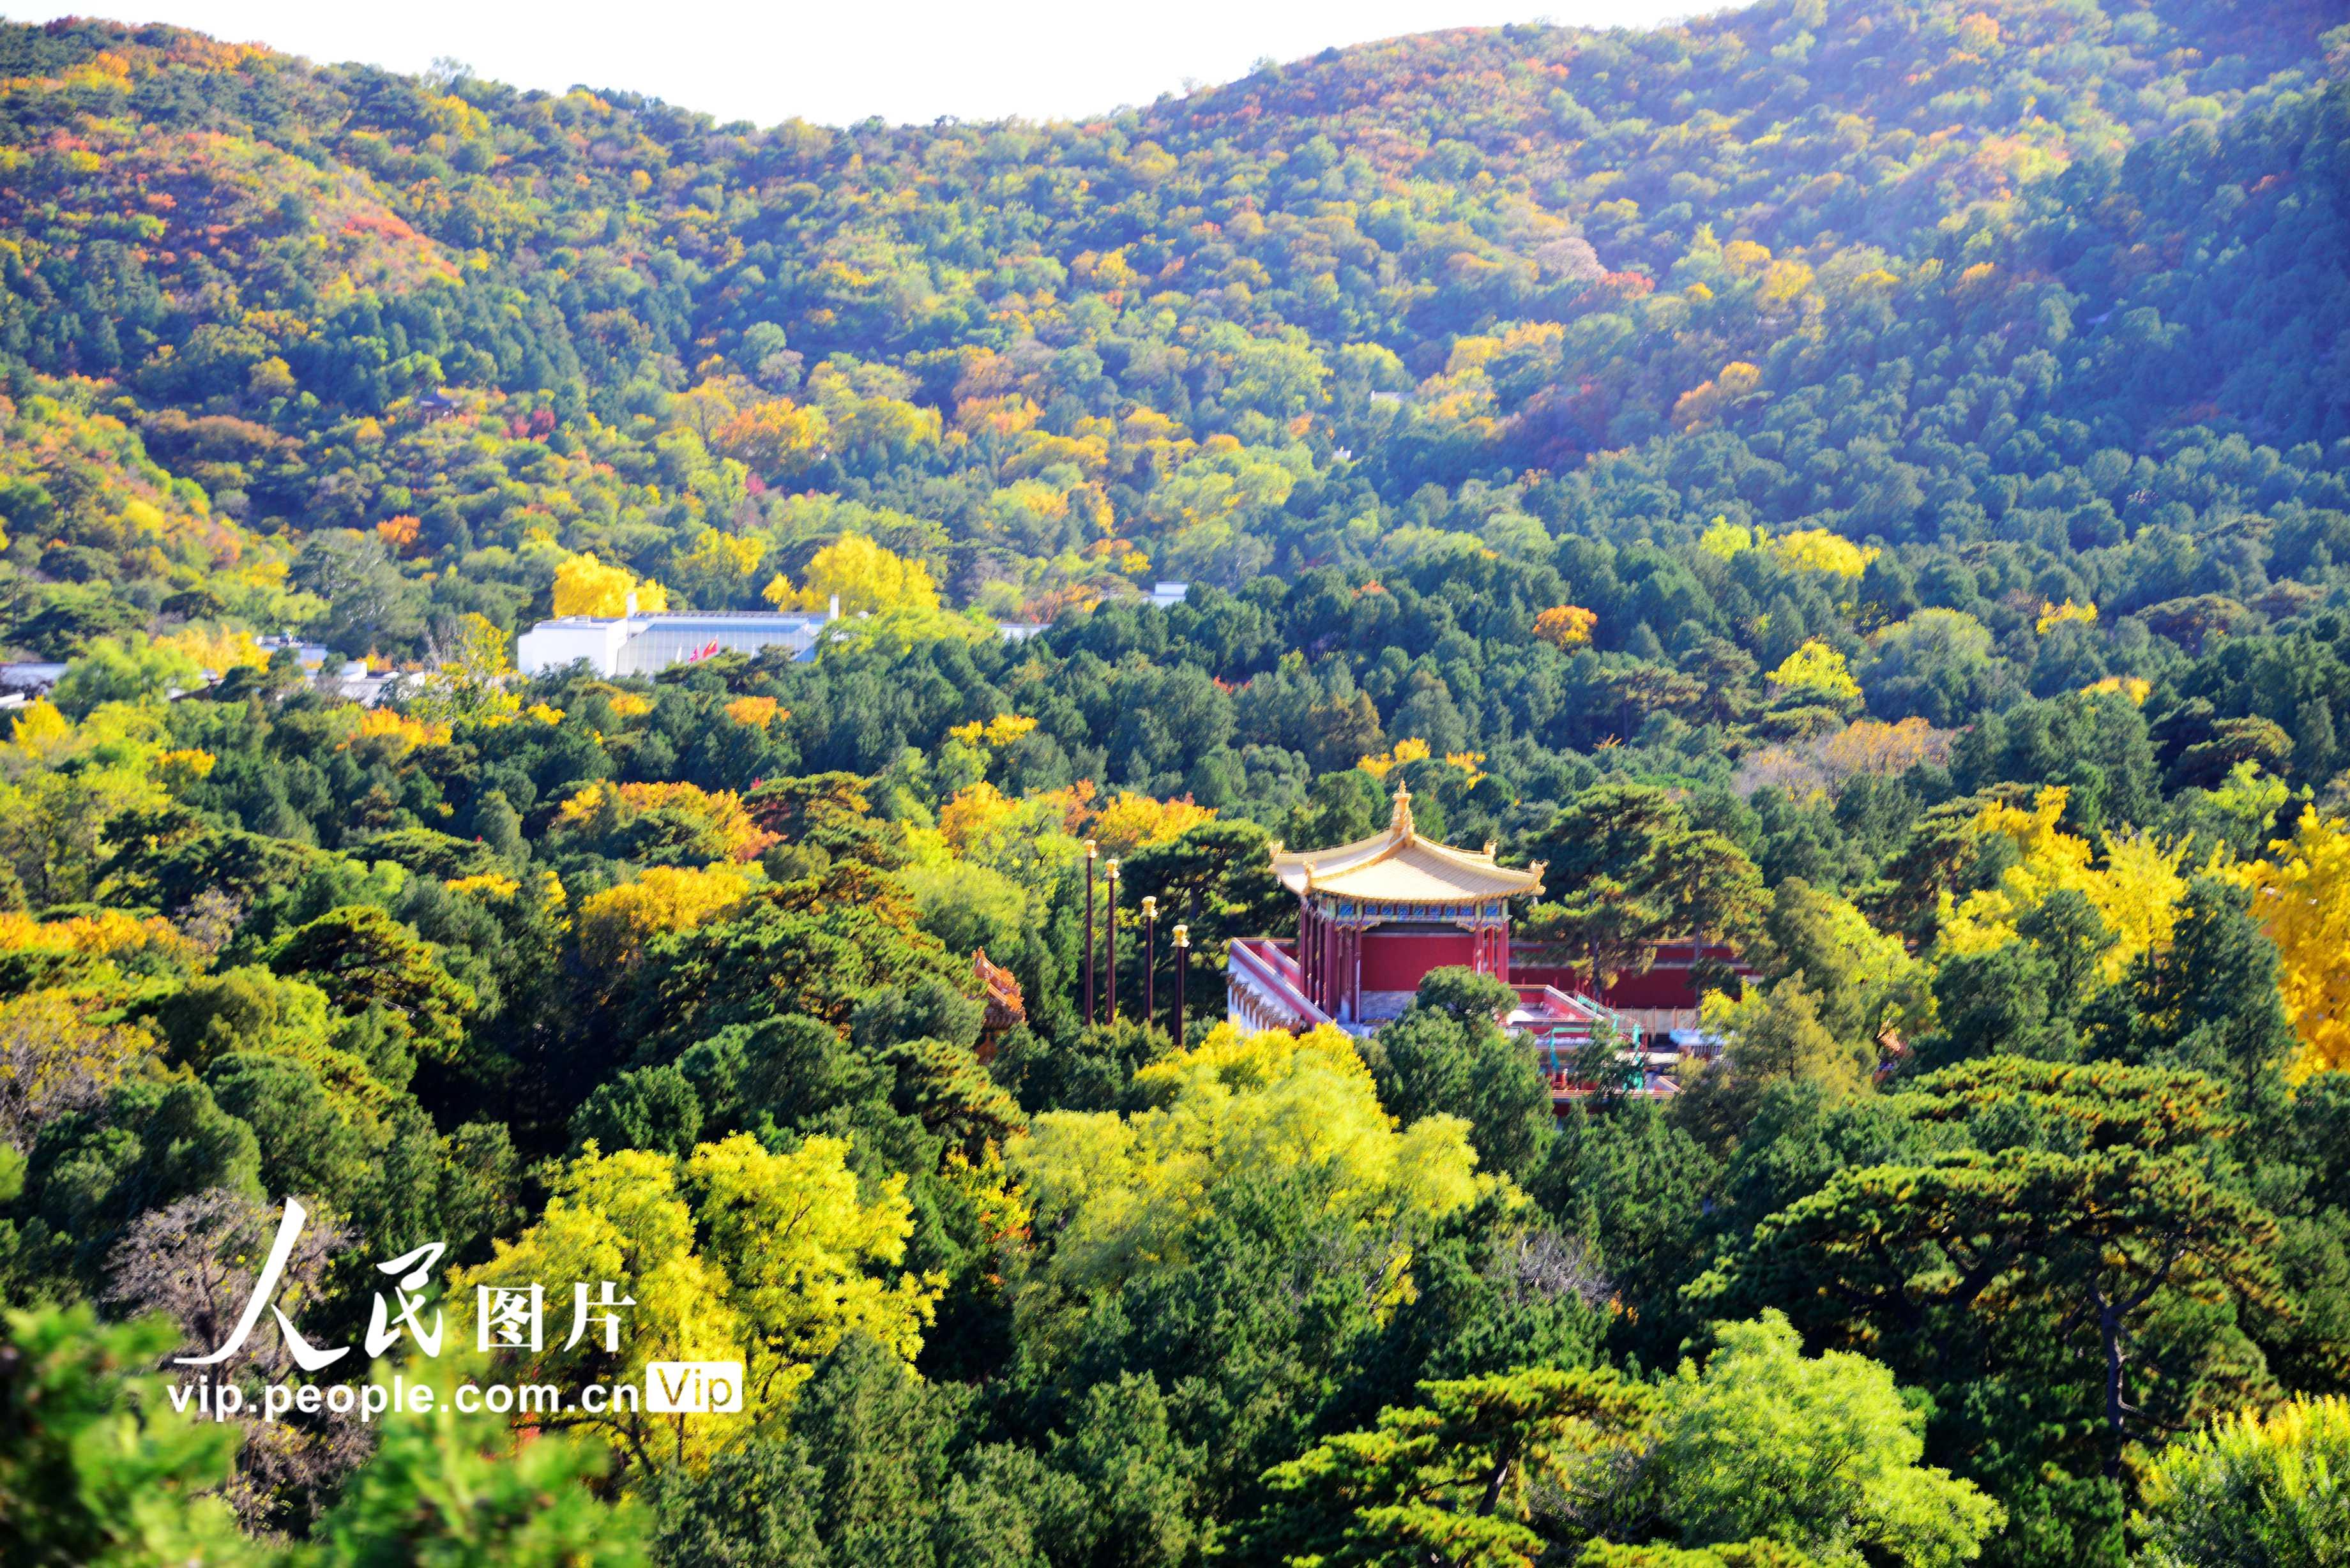 【携程攻略】北京香山公园景点,北门进去景色非常美丽，有大片的感觉。要看到更多的美景需要上到山顶…